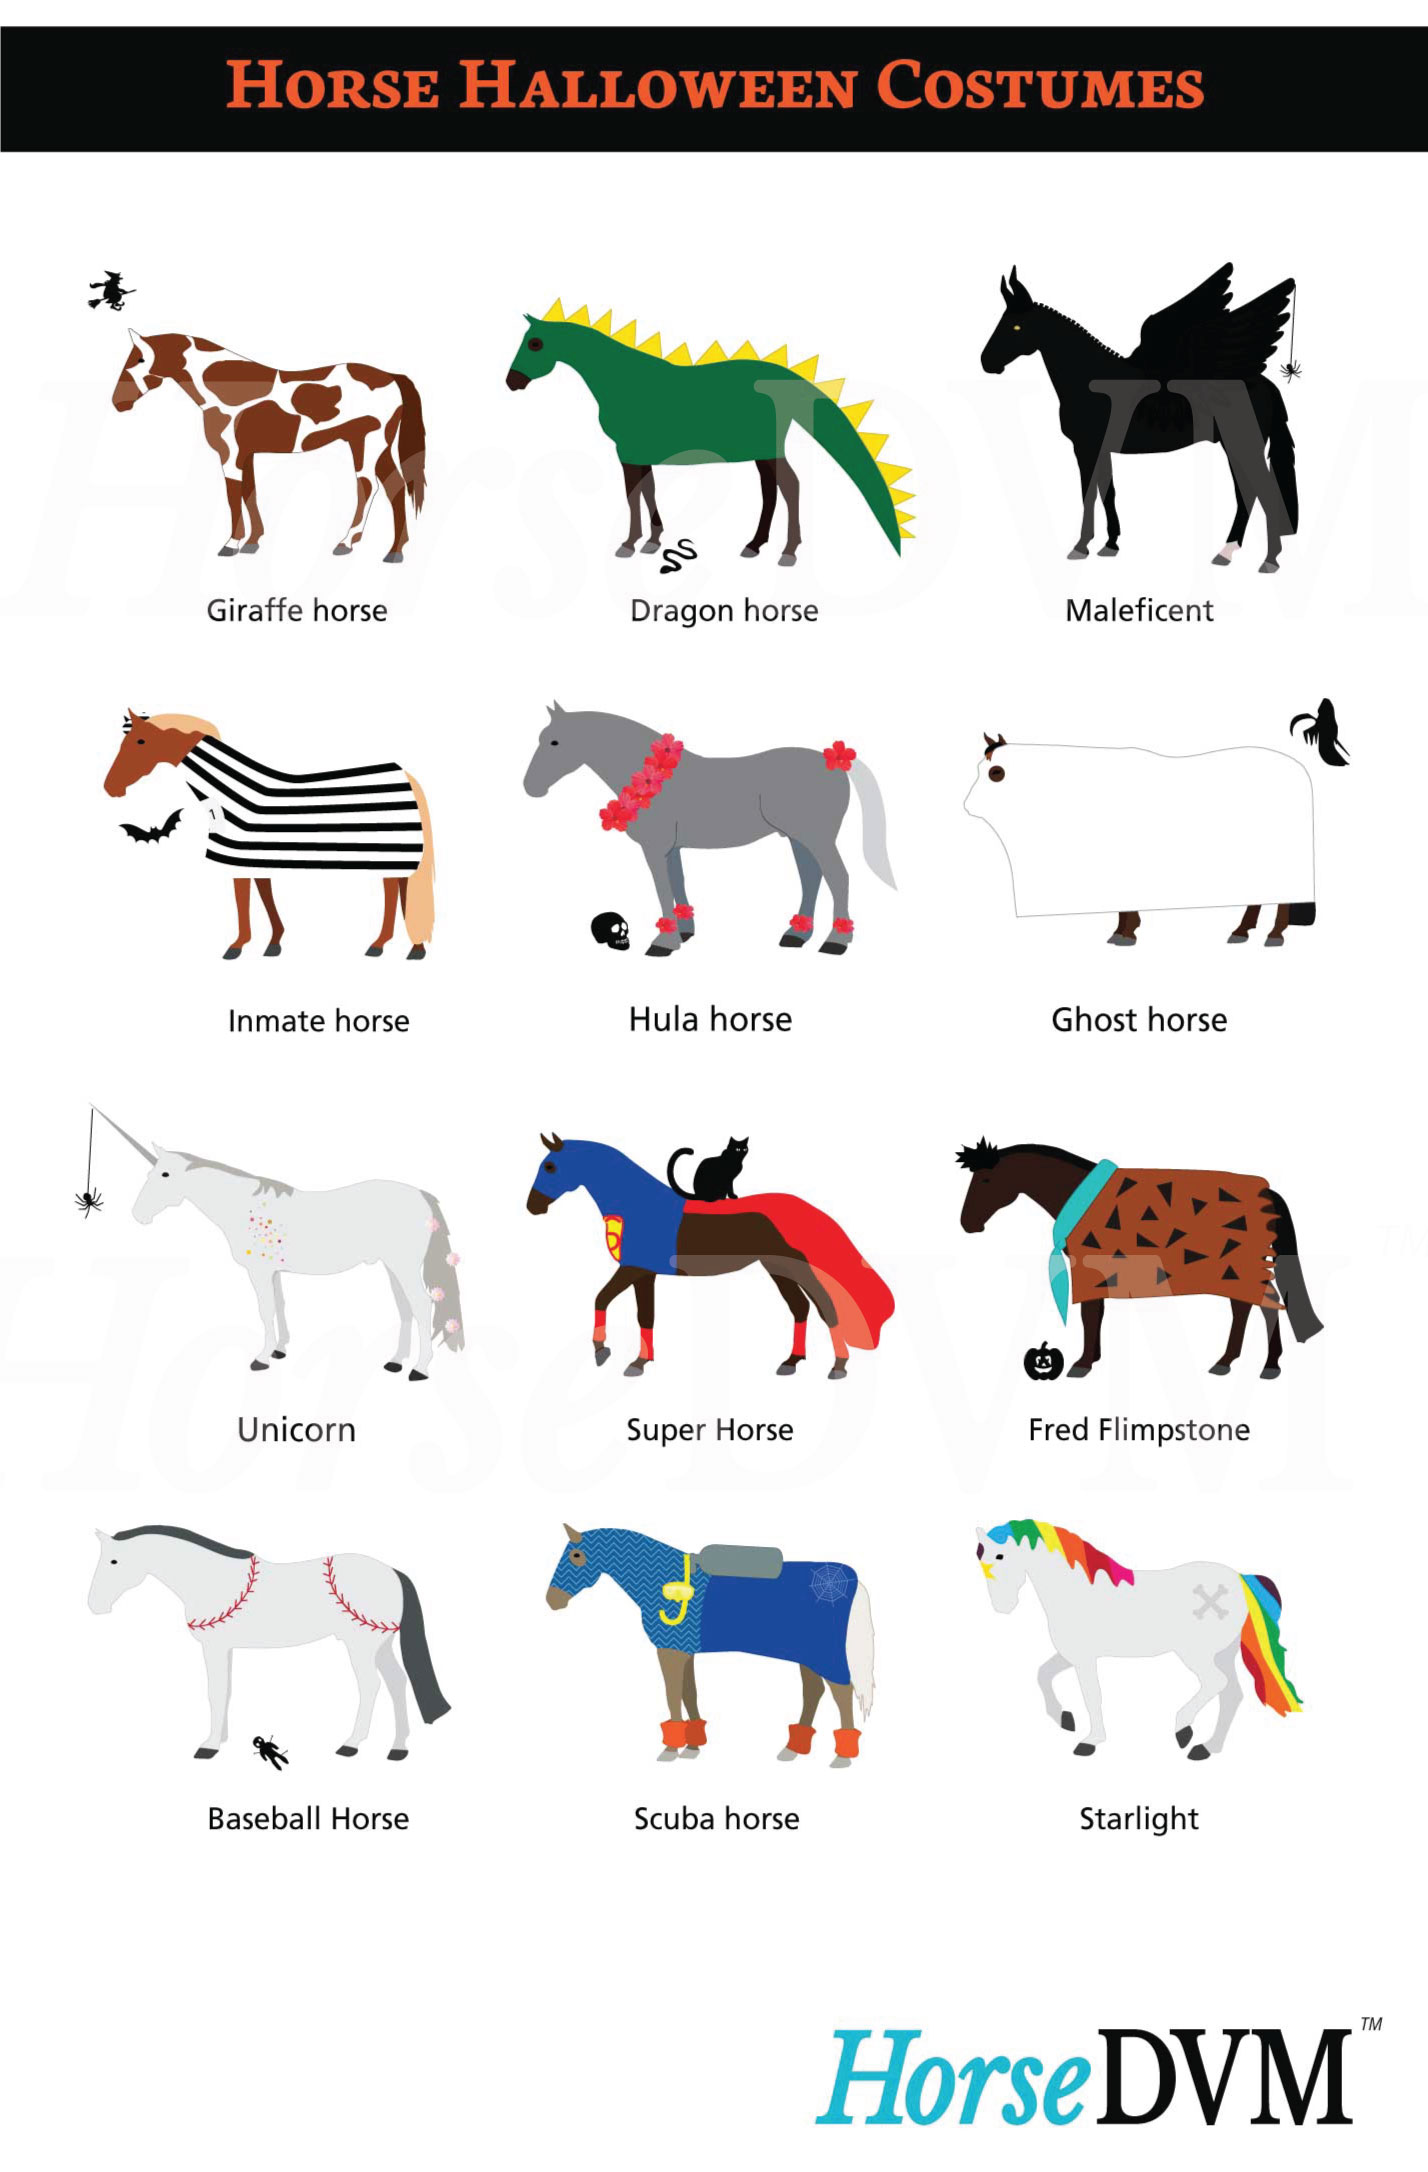 HorseDVM - horsedvm-horse-halloween-costumes-infographic